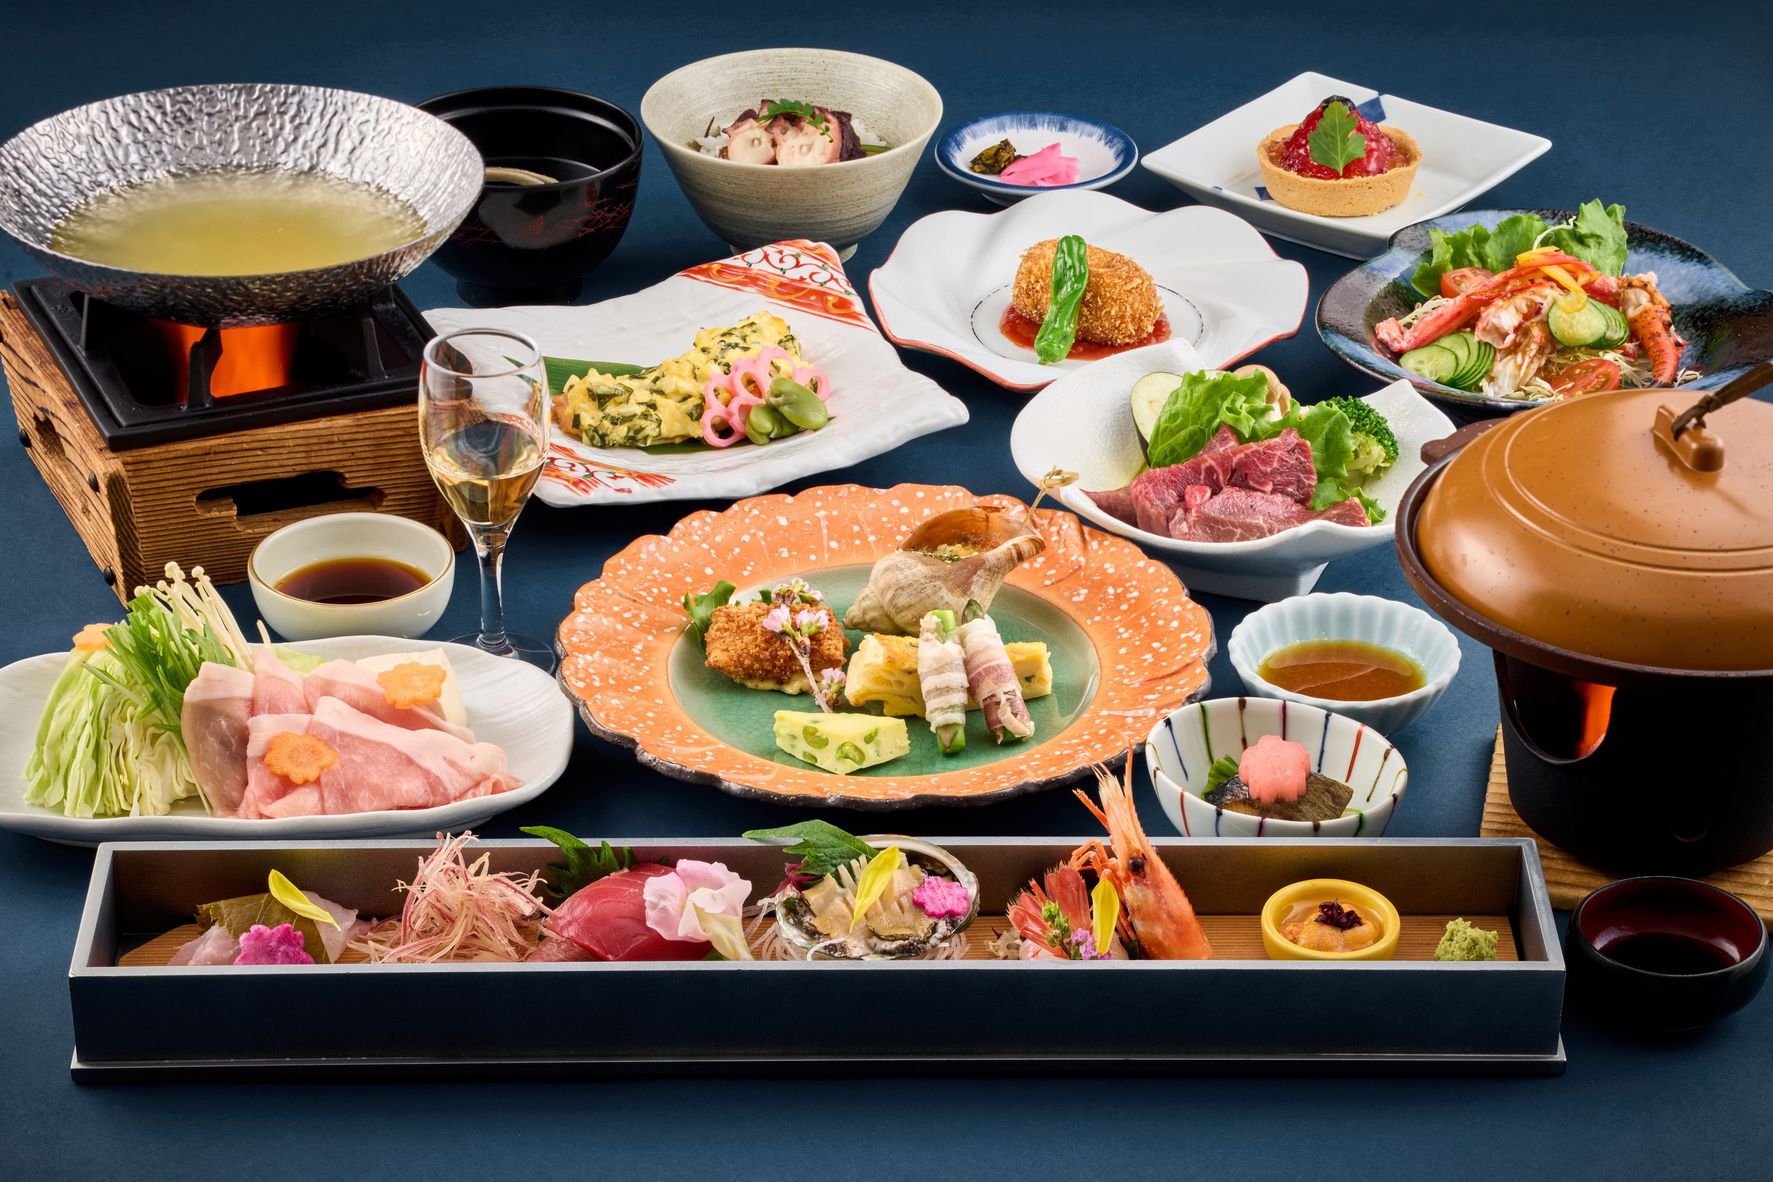 【和食会席】旬の食材を贅沢に使用し、料理長が腕によりをかけた四季折々の味覚をご堪能ください